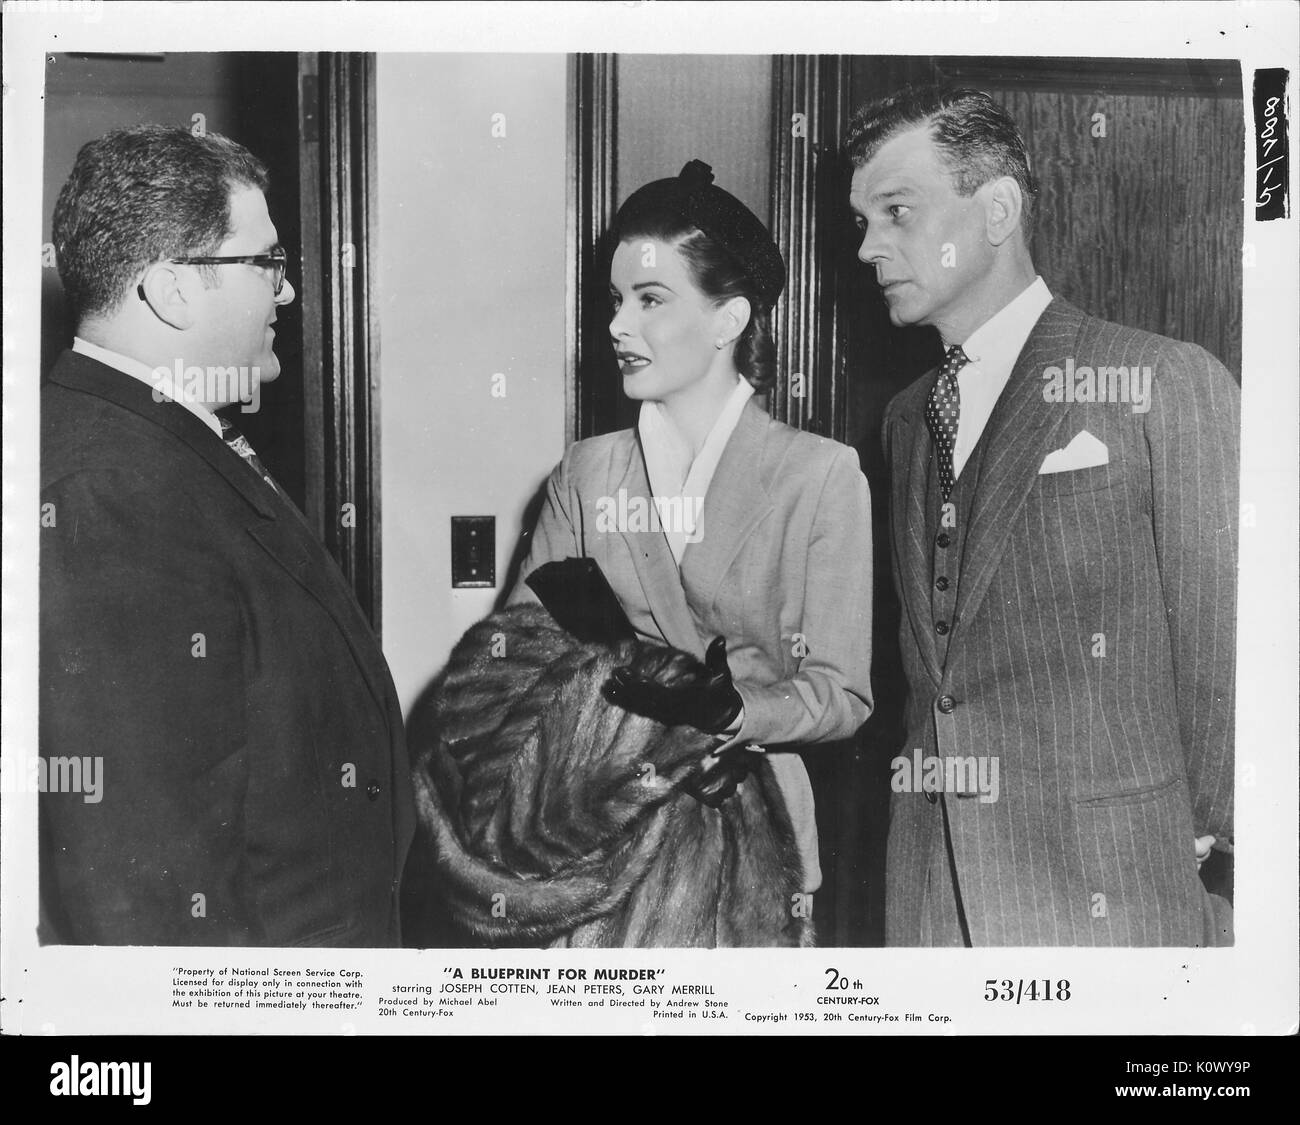 Ein Film noch Szene aus "eine Blaupause für Mord" (1953 Twentieth Century Fox thriller), eine elegante Frau Ernst im Gespräch mit einem Mann mit Brille und einem dunklen Anzug, während der andere Mann hinter sich aufmerksam zuhört, 1953. Stockfoto